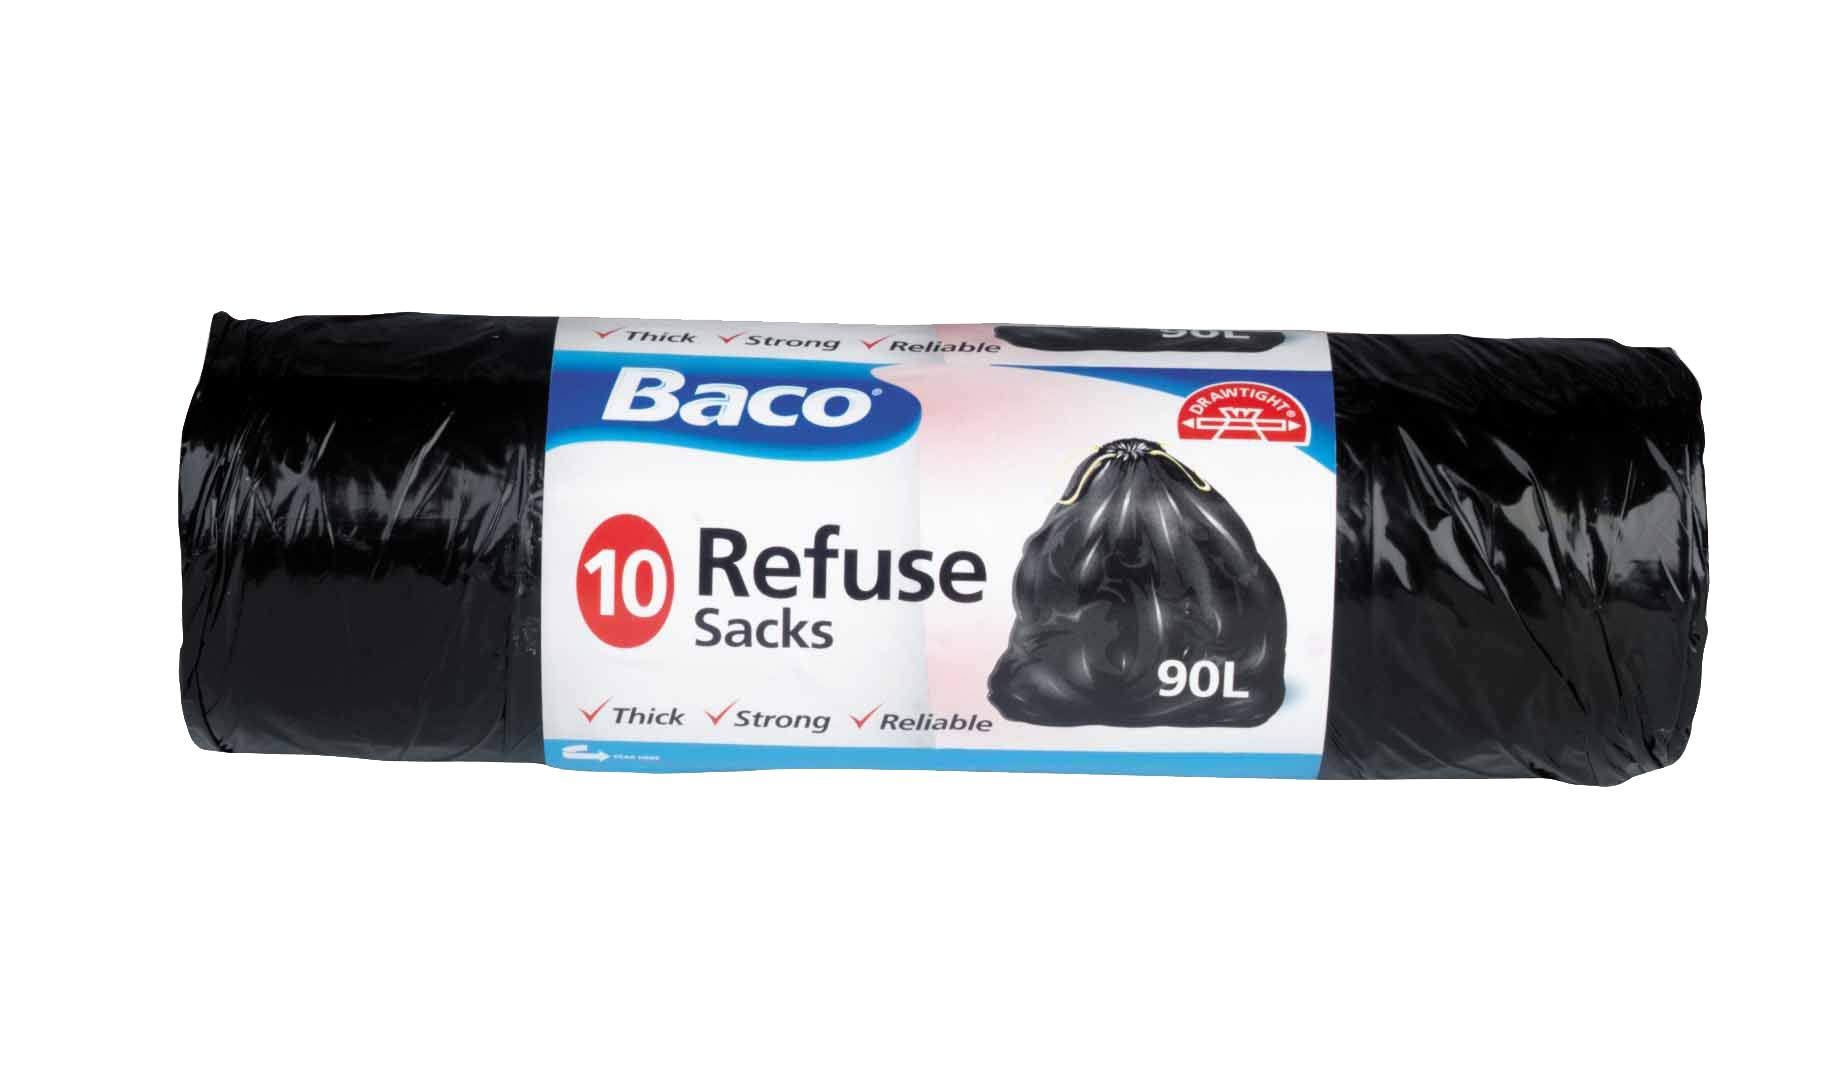 Baco Refuse Sacks - 10 x 90L Pack